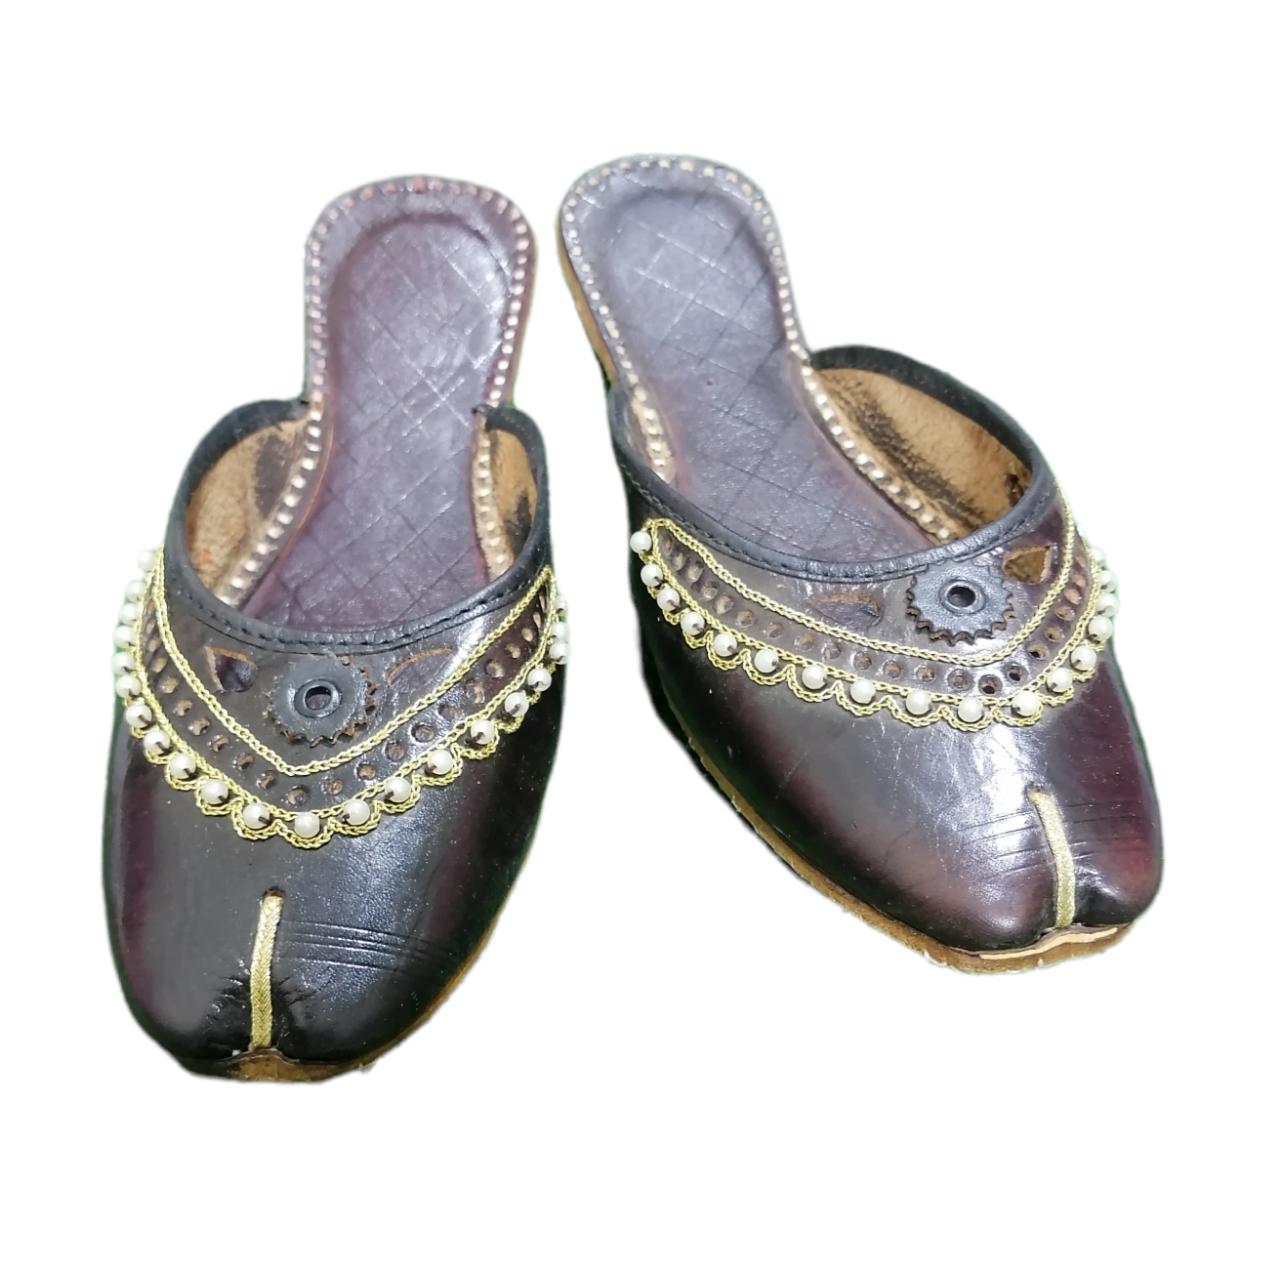 Khussa, Punjabi Jutti, Kundan, Rhinestone Anklet Pakistani Khussa, Indian  Shoes, Bridal, Wedding Shoes, Ethnic Flat Women's Shoes. - Etsy